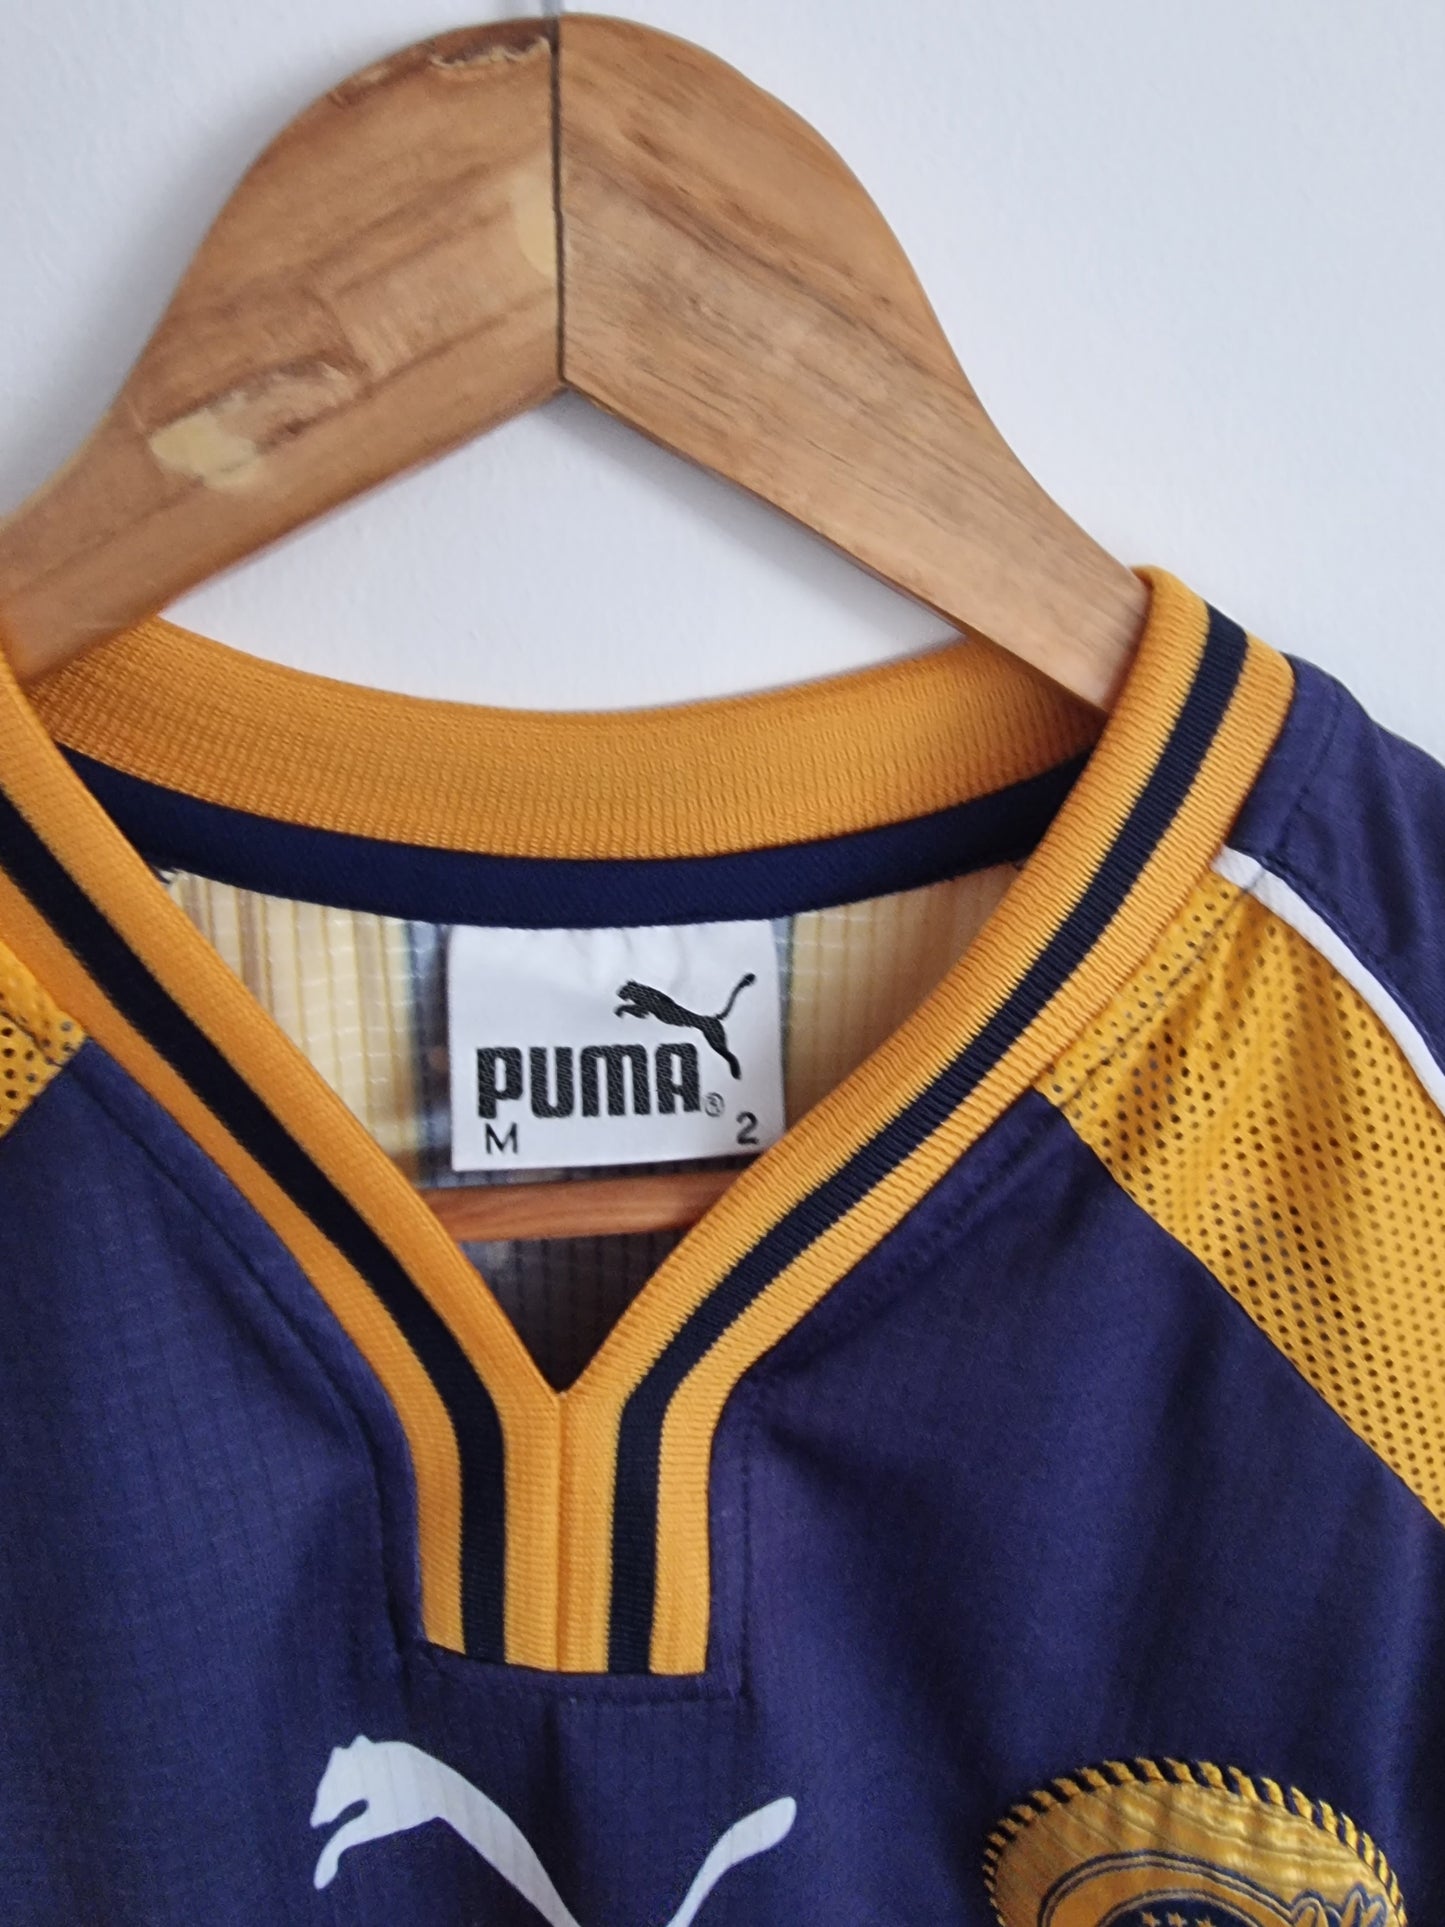 Puma Rosario Central 02/03 Home Shirt Medium